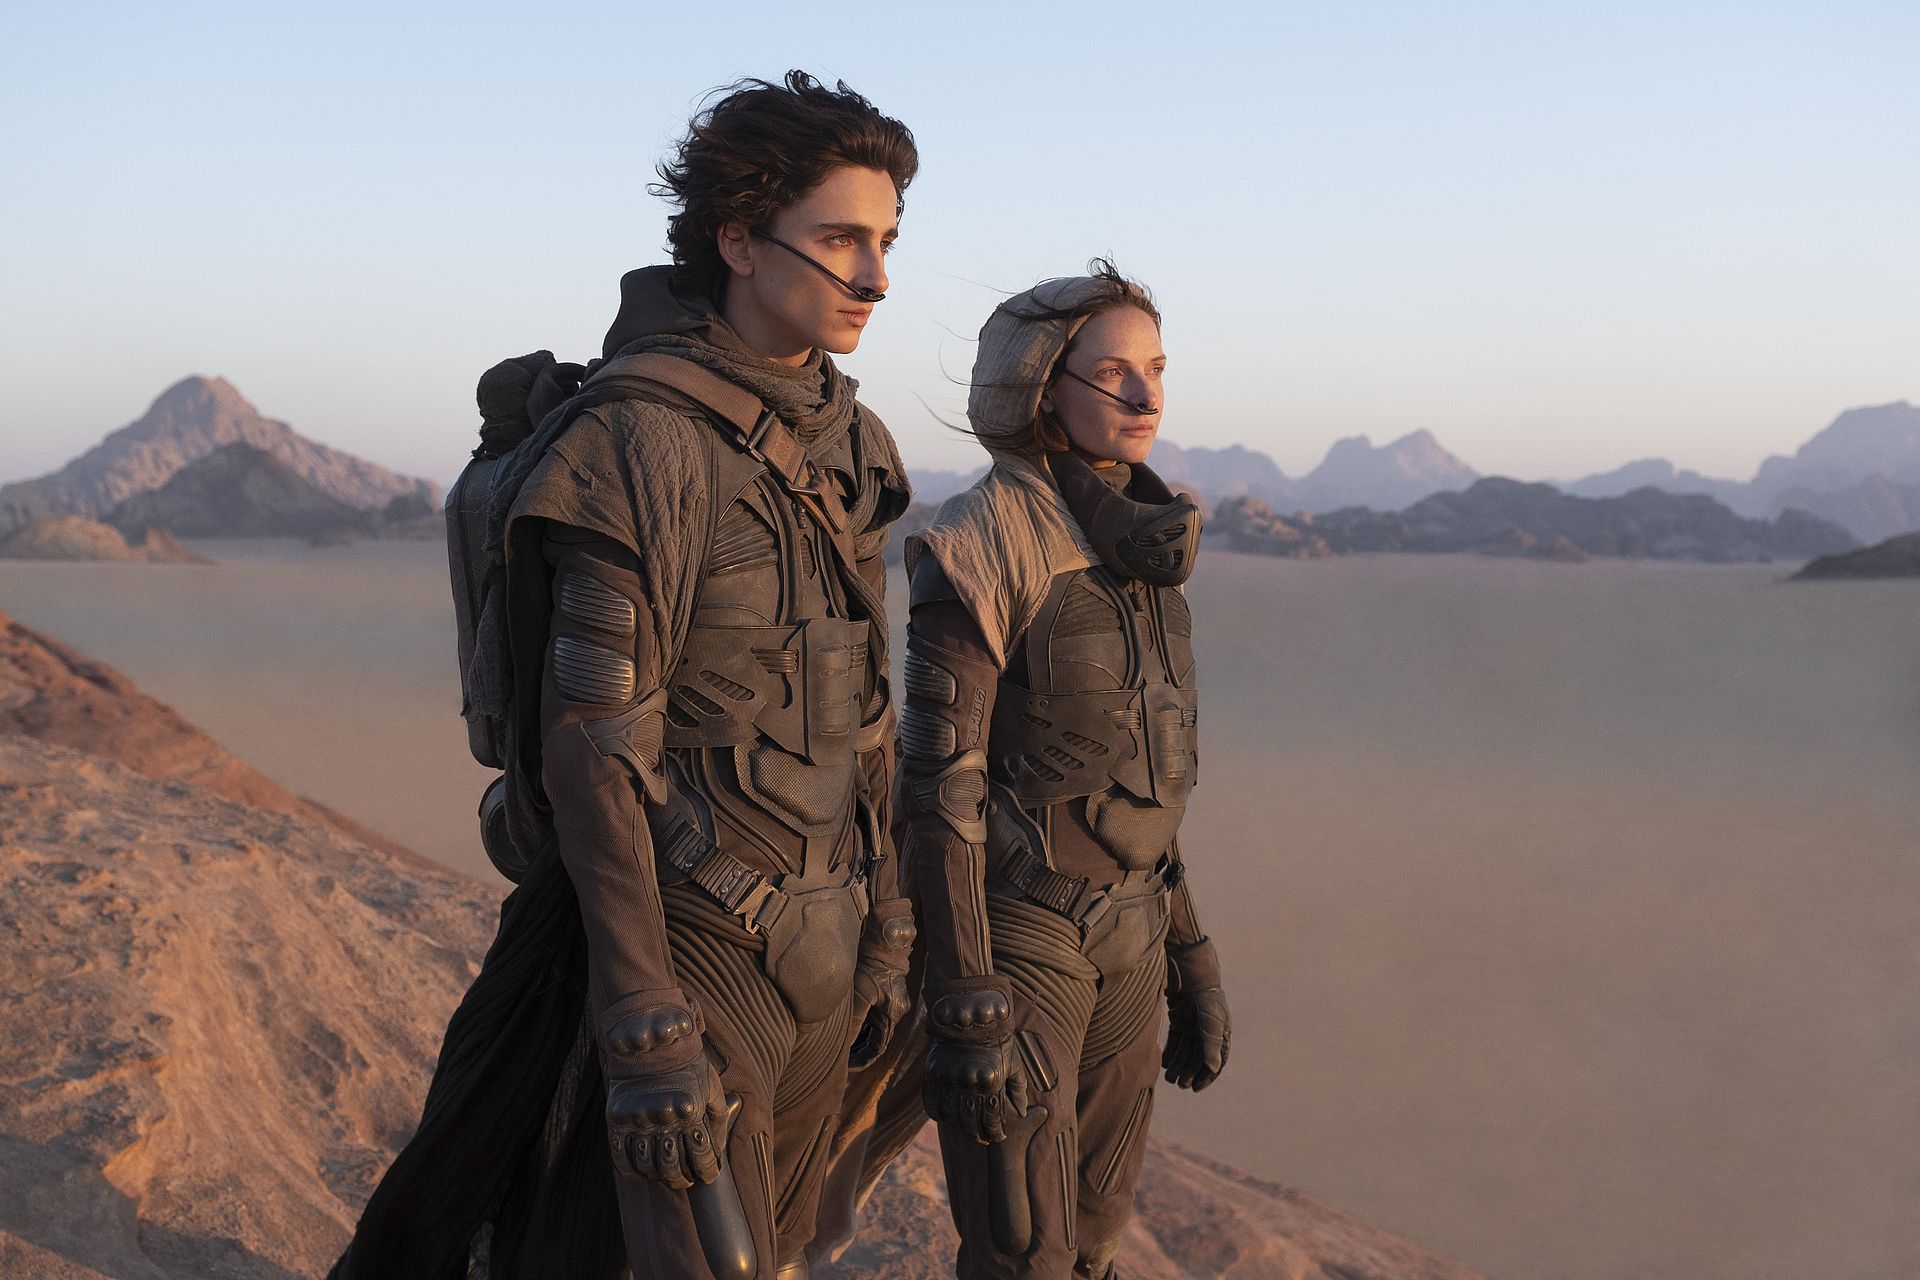 Lees ook: 'Film 'Dune' is eindelijk een overtuigende sf-klassieker'